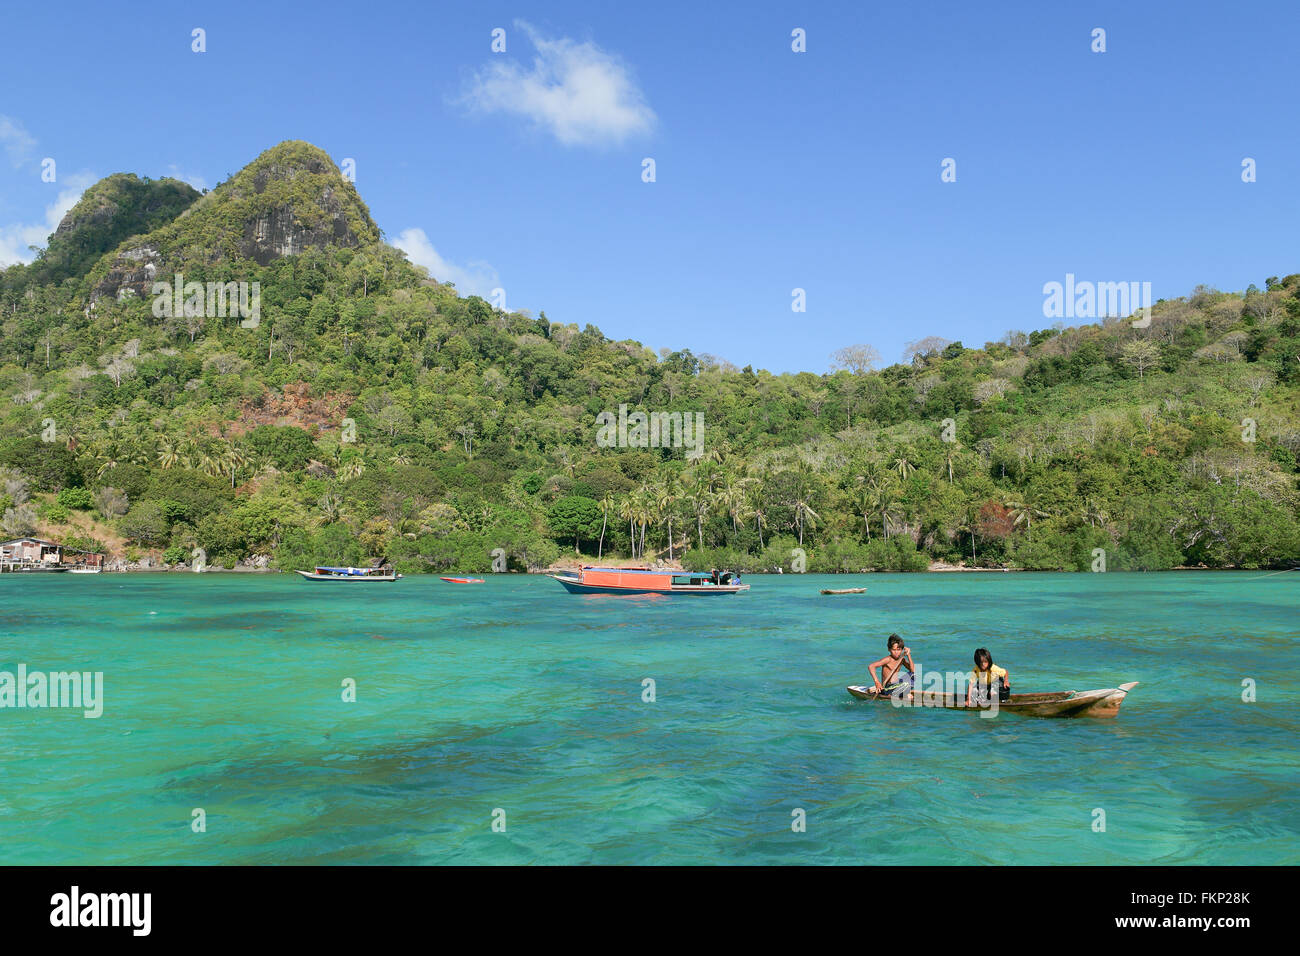 La vie quotidienne et du paysage en vue de l'île de Sipadan Bodgaya située dans Semporna, Sabah. Banque D'Images